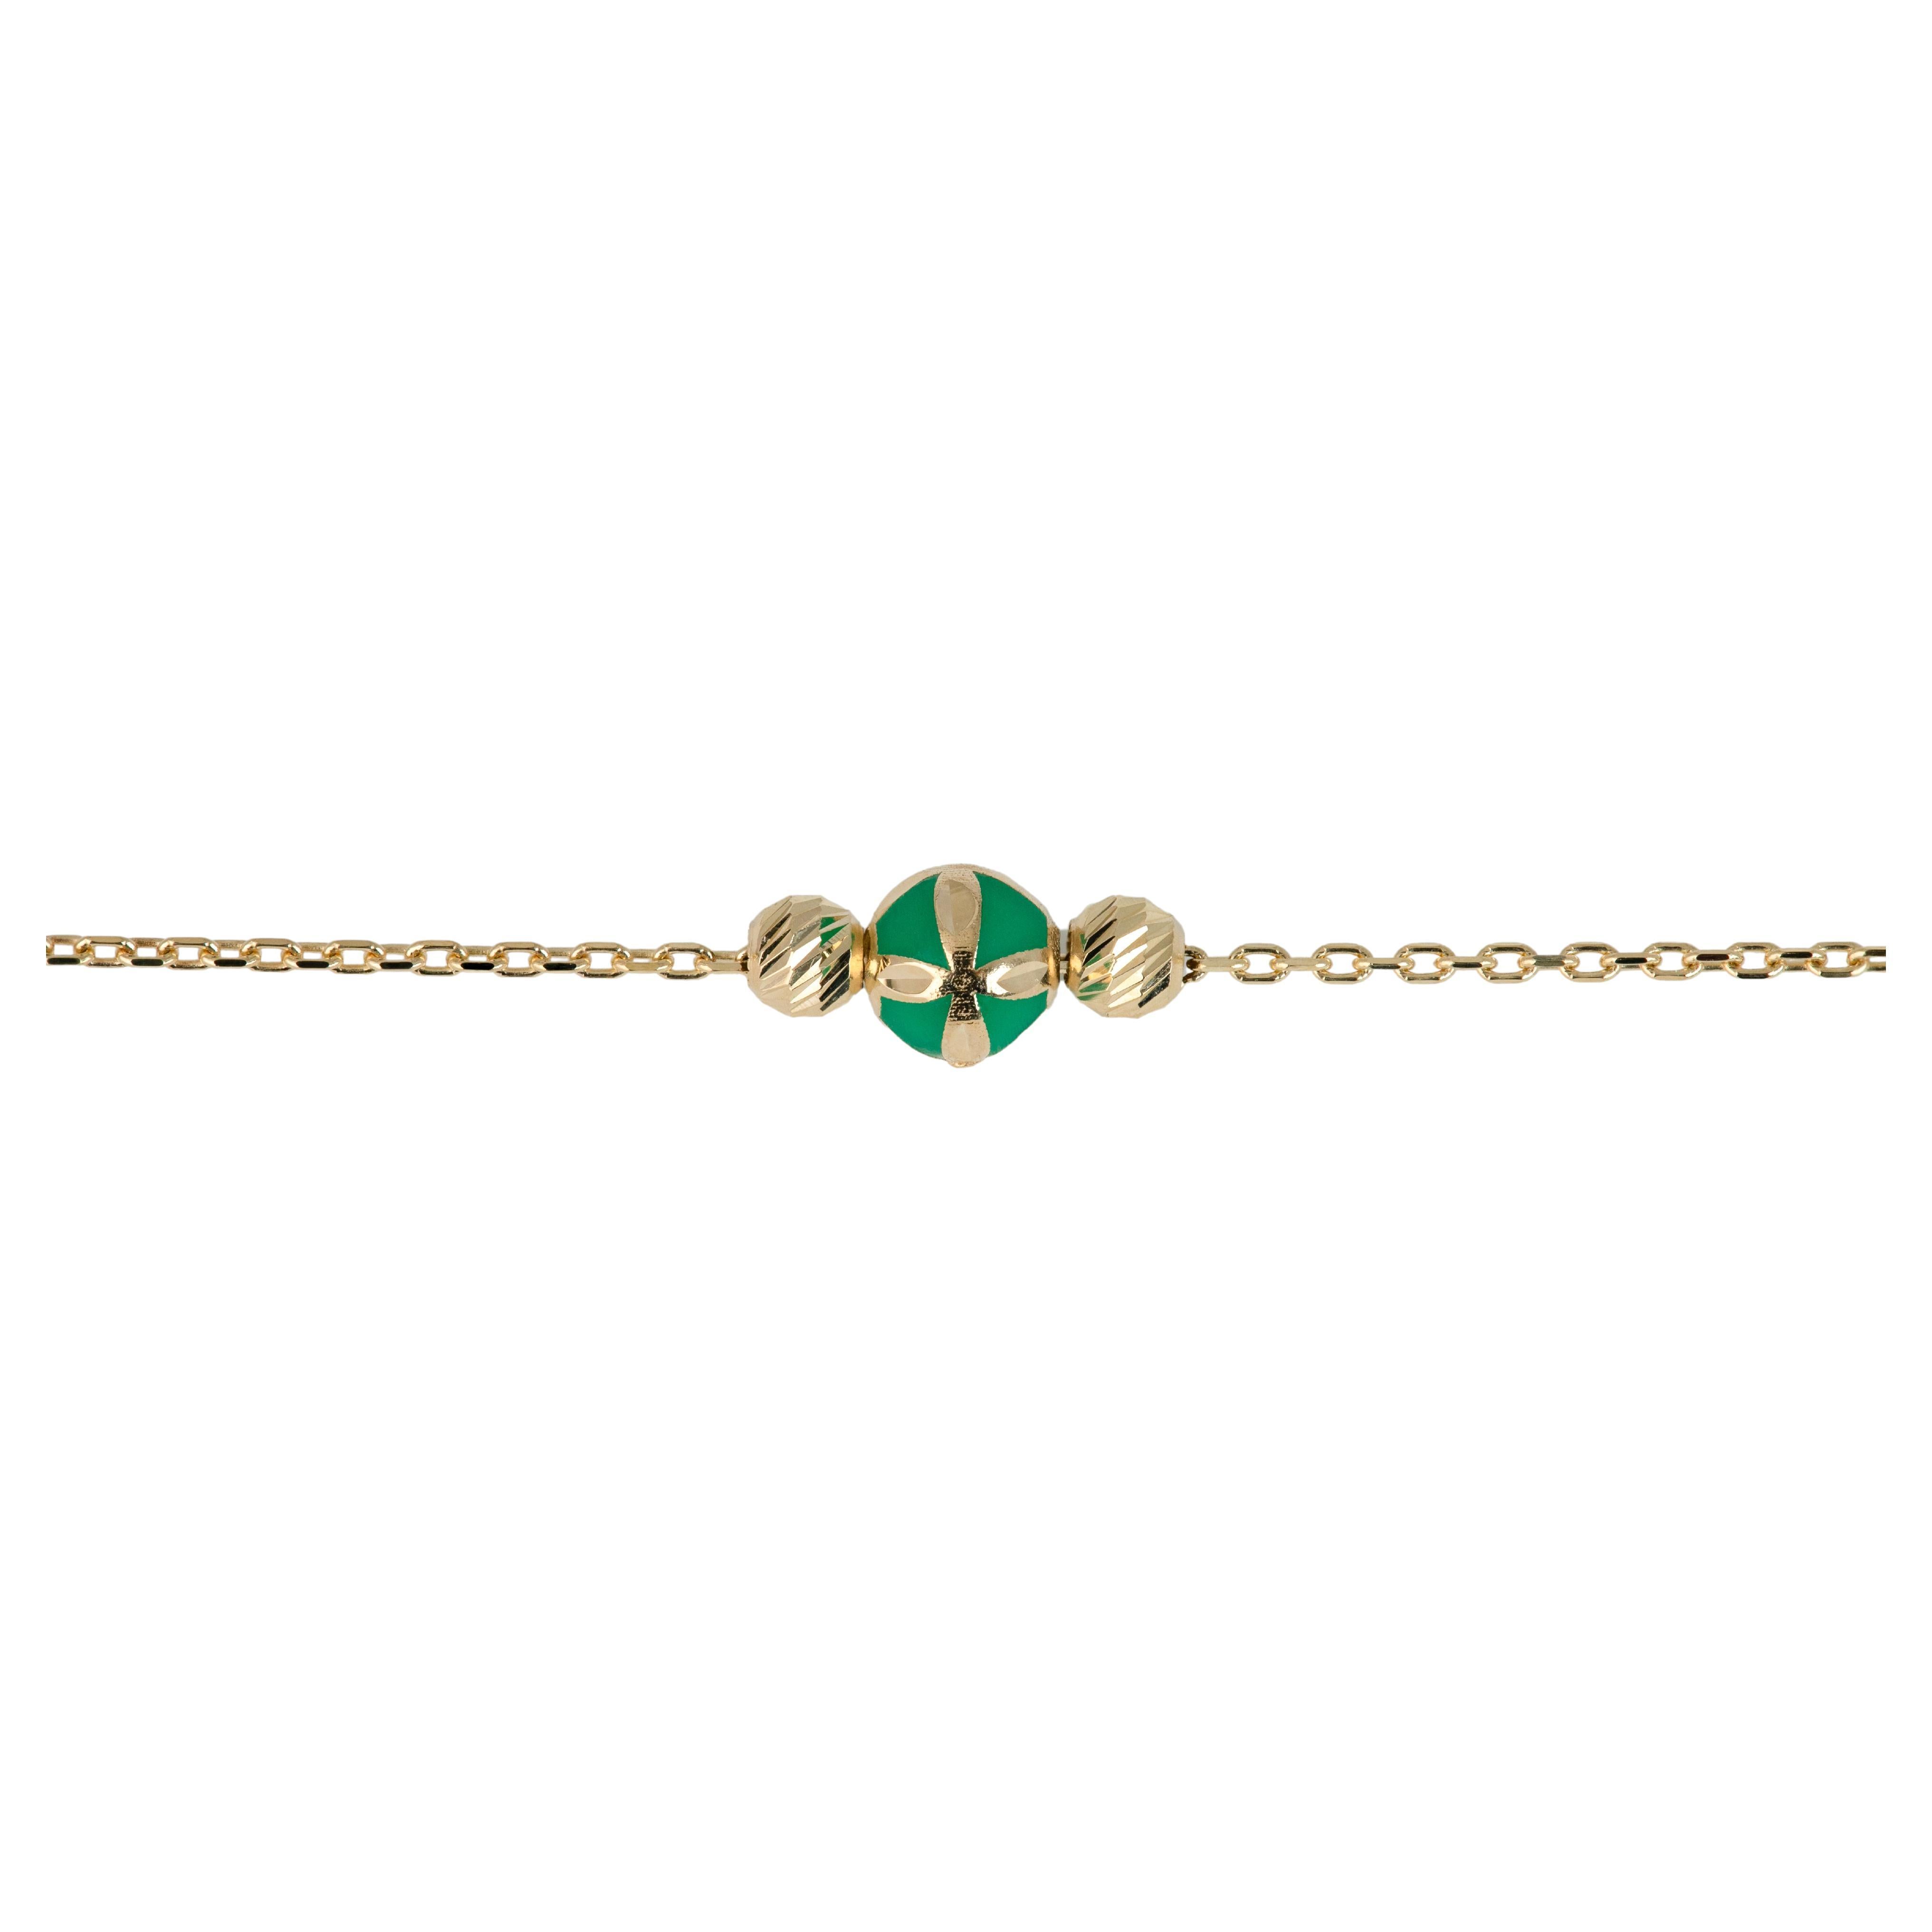 Bracelet en or 14 carats émaillé vert et bracelet de collection Dorica